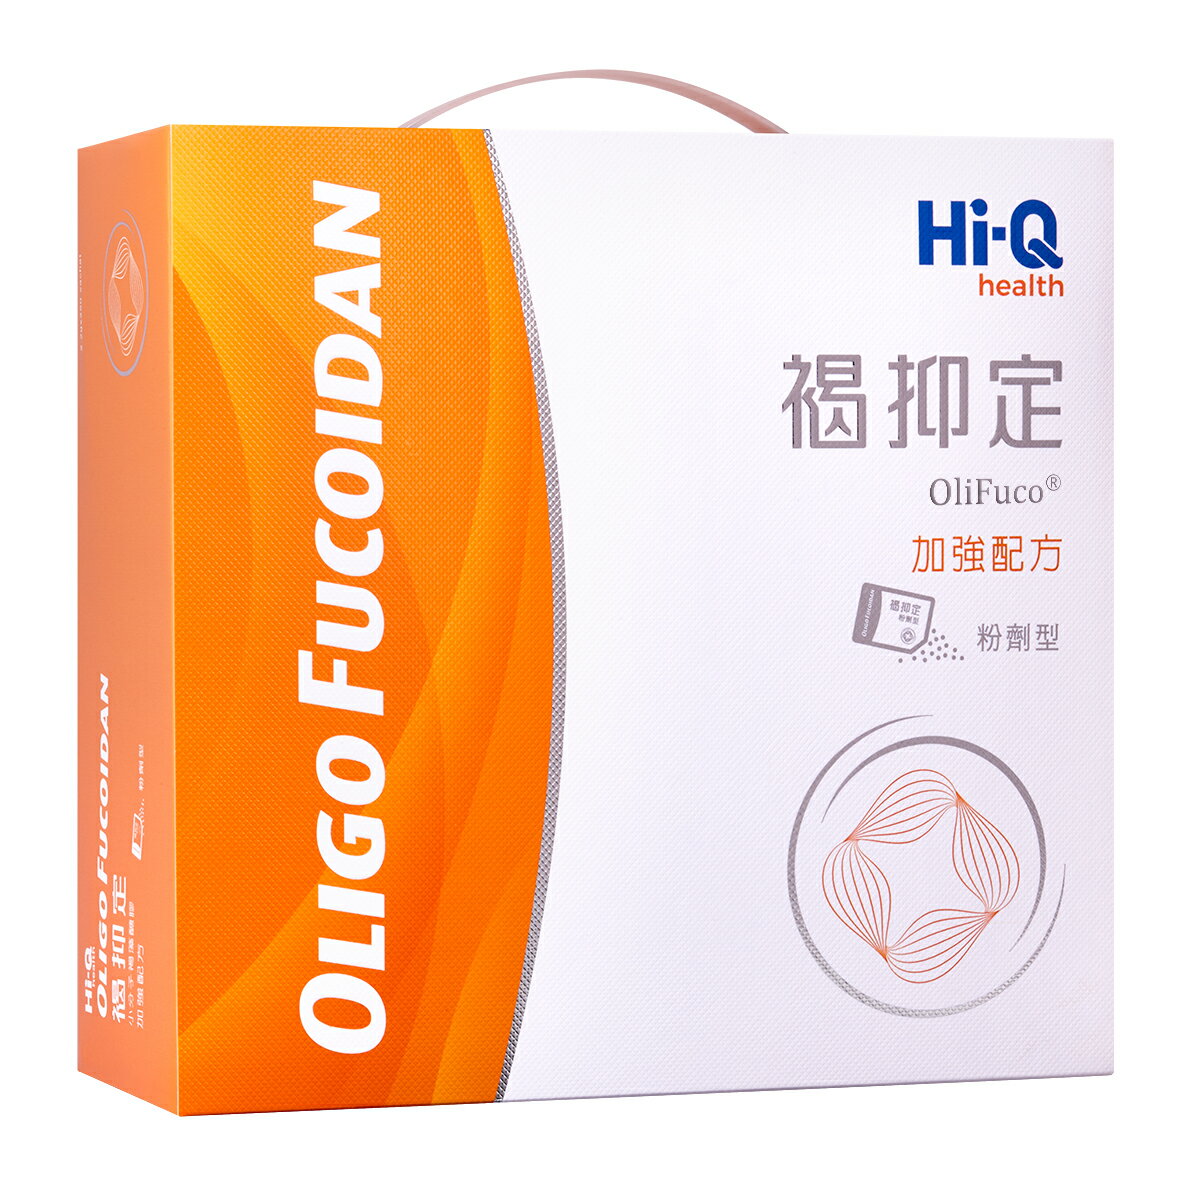 Hi-Q 中華海洋生技 褐抑定 加強配方粉劑型 250包 禮盒 原廠公司貨